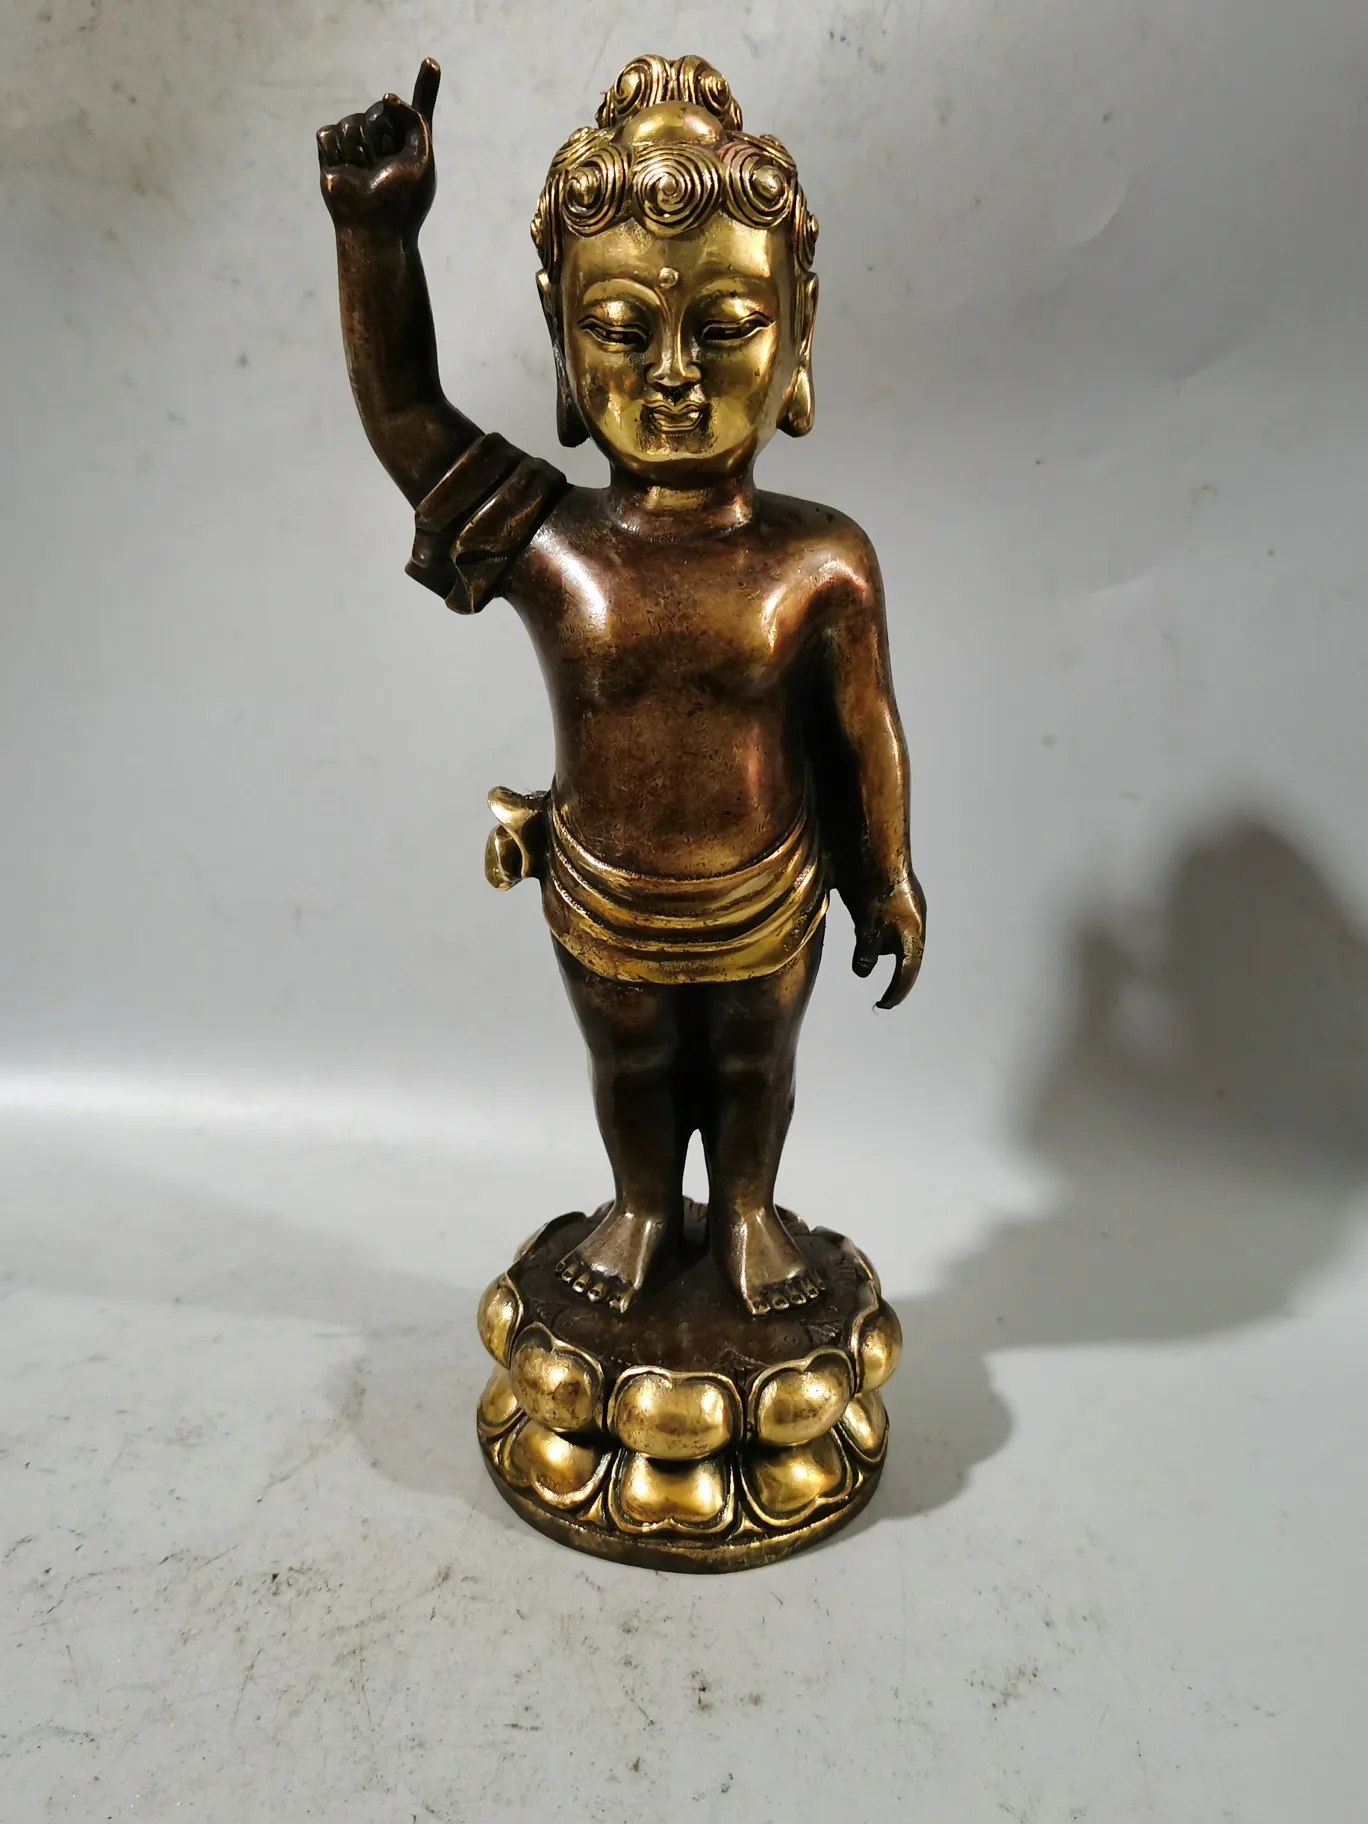 

Украшения фэн-шуй из пурпурной меди с позолоченным принцем Будда, статуя Будды из чистой меди, украшения шакамуни б